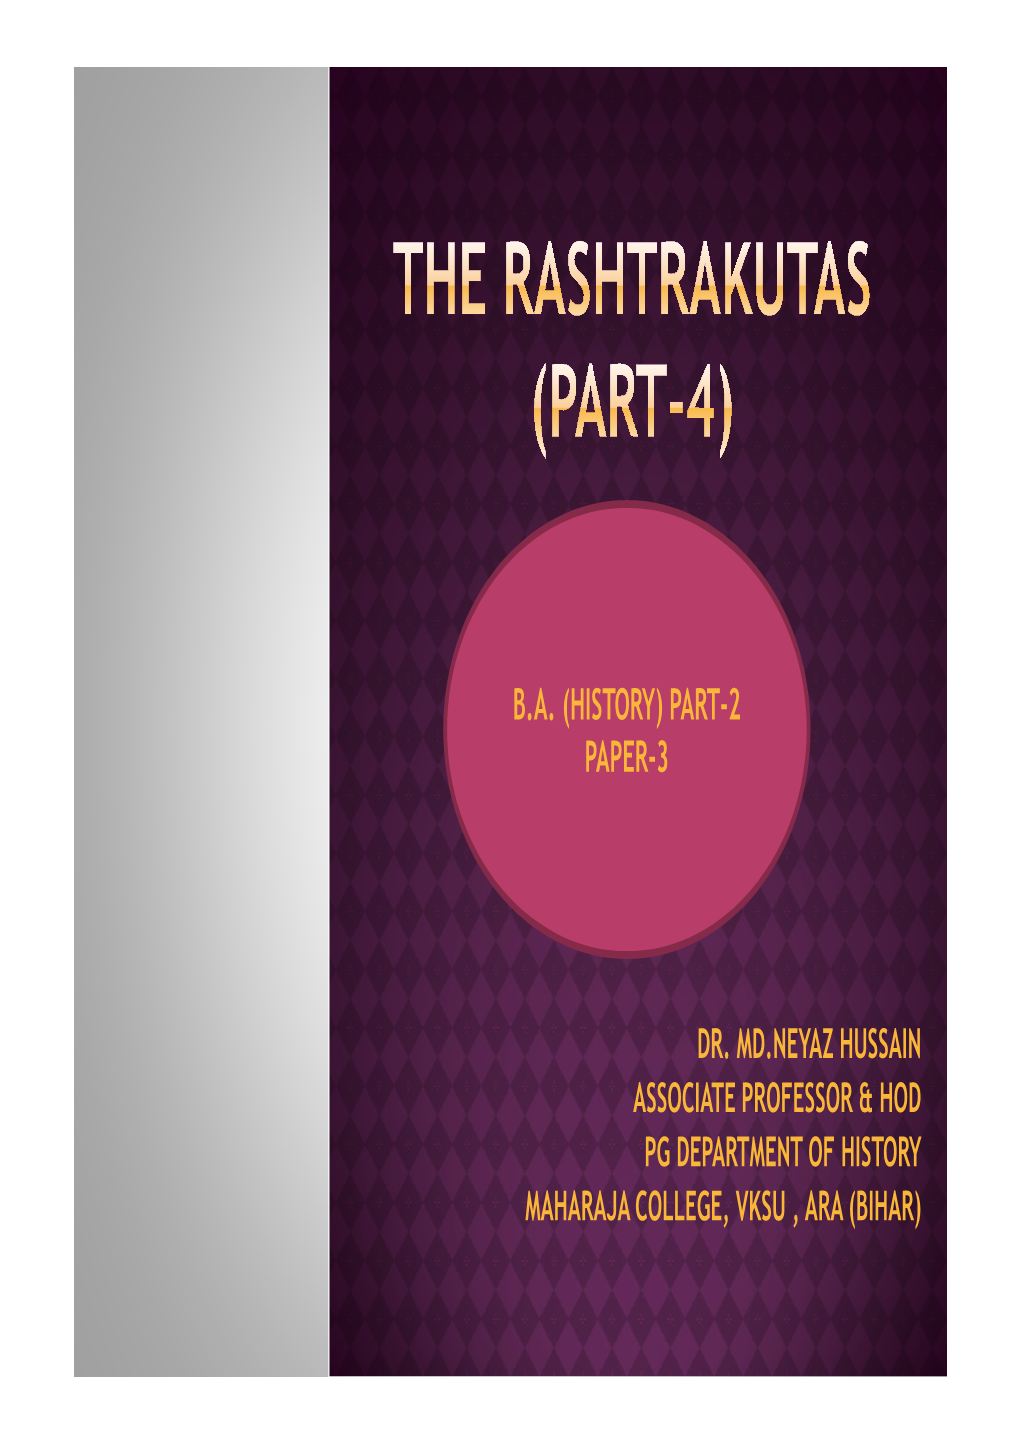 THE RASHTRAKUTAS Part-4